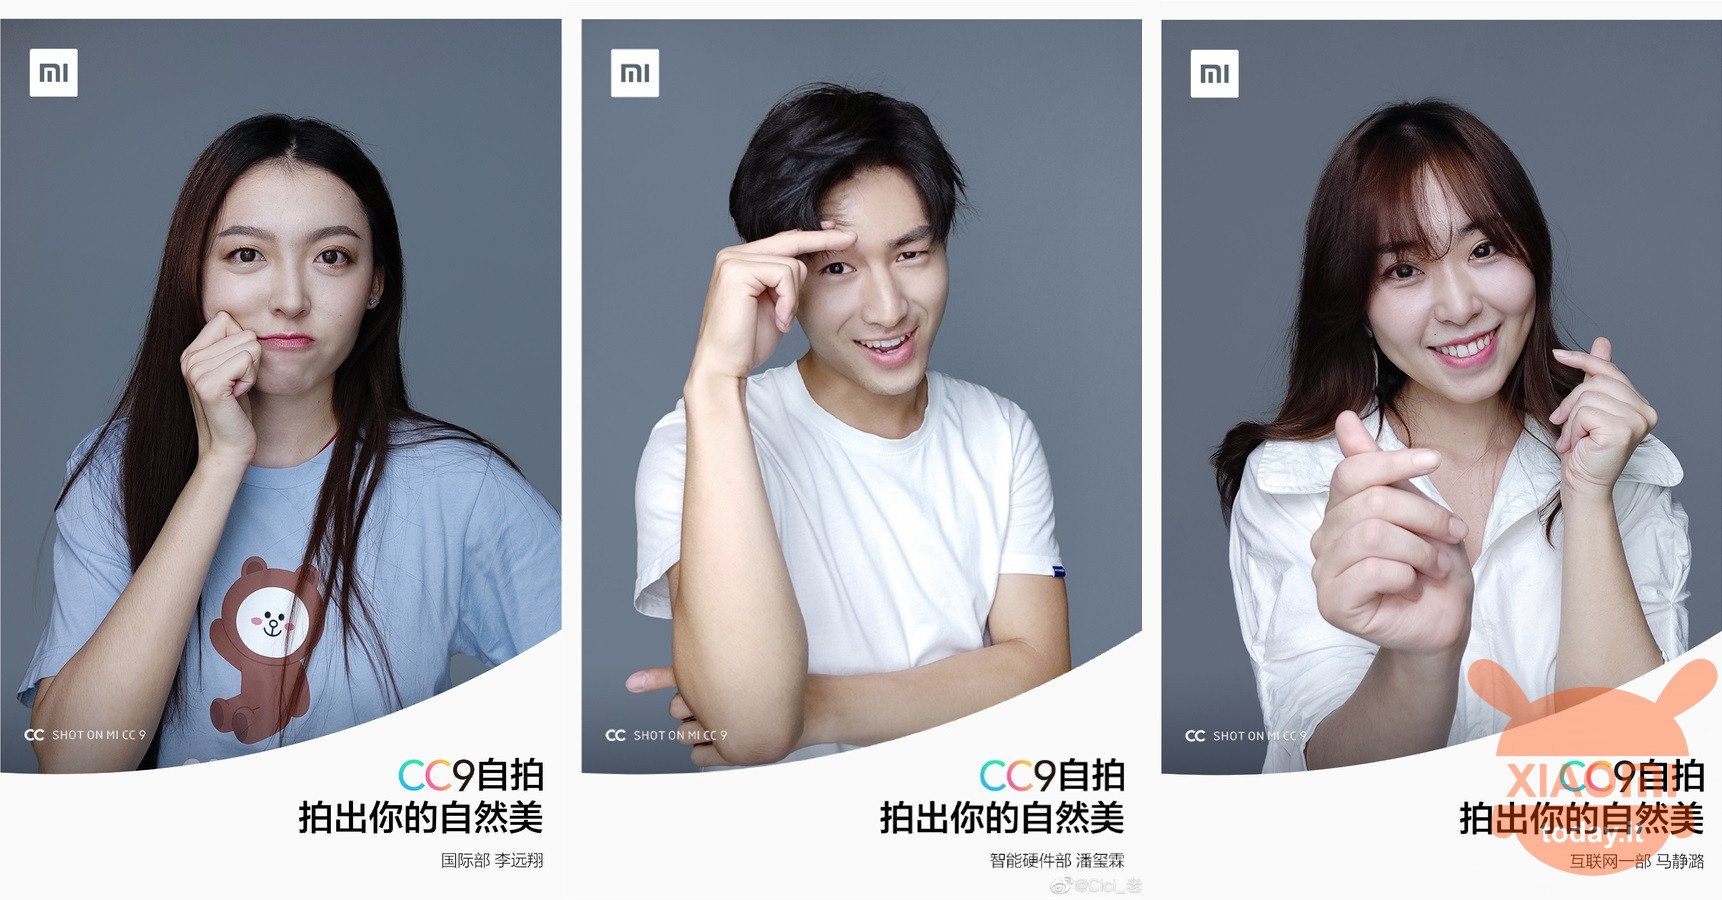 ο πιο όμορφος υπάλληλος της Xiaomi